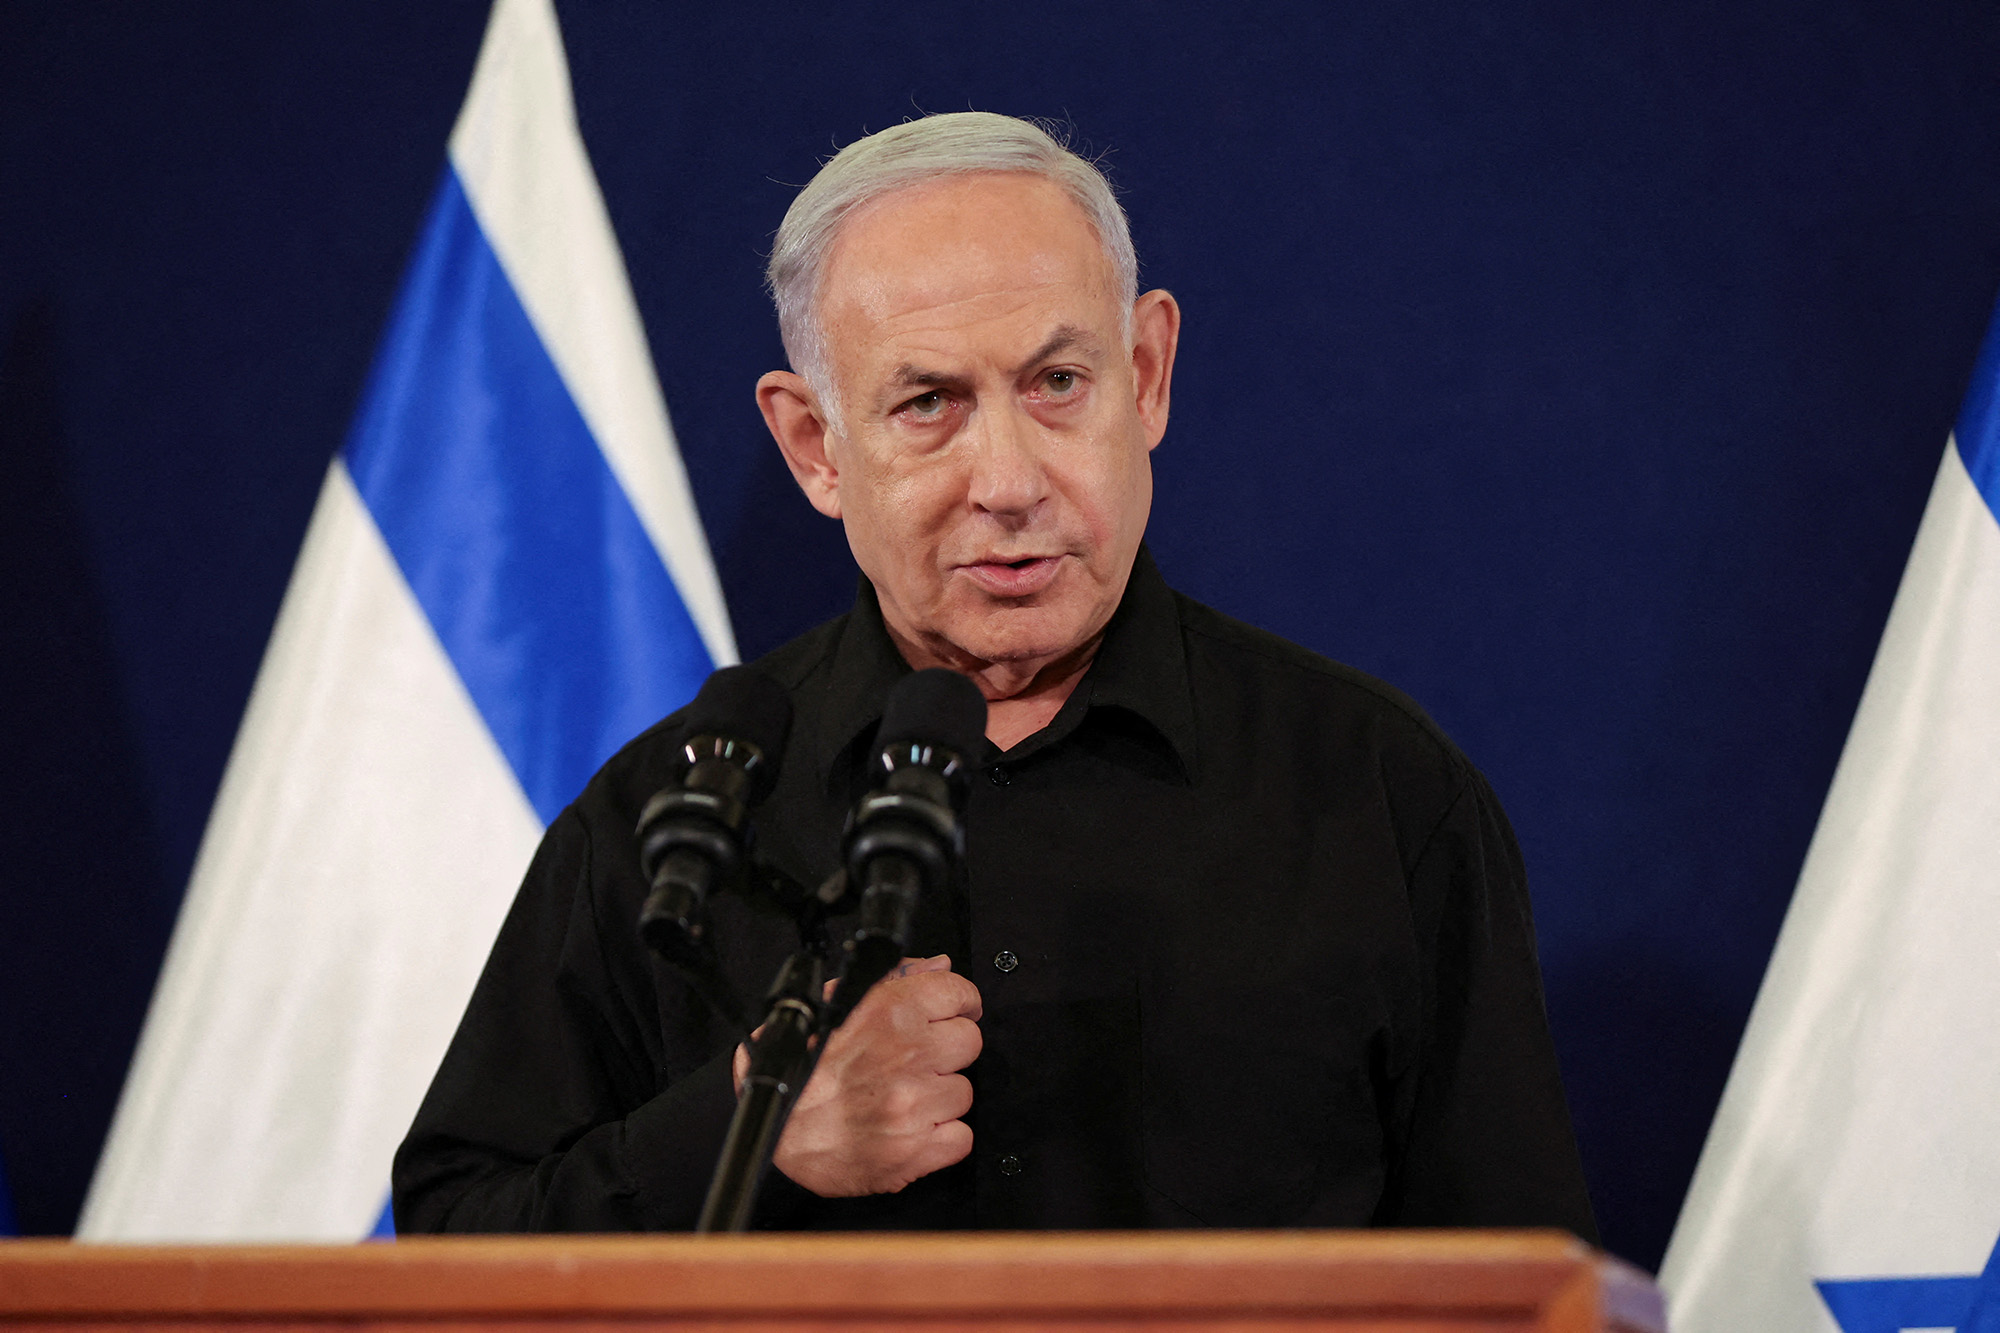 El primer ministro de Israel, Benjamín Netanyahu, celebra una conferencia de prensa en la base militar de Kirya en Tel Aviv, Israel, el 28 de octubre. (Crédito: Abir Sultan/Reuters)